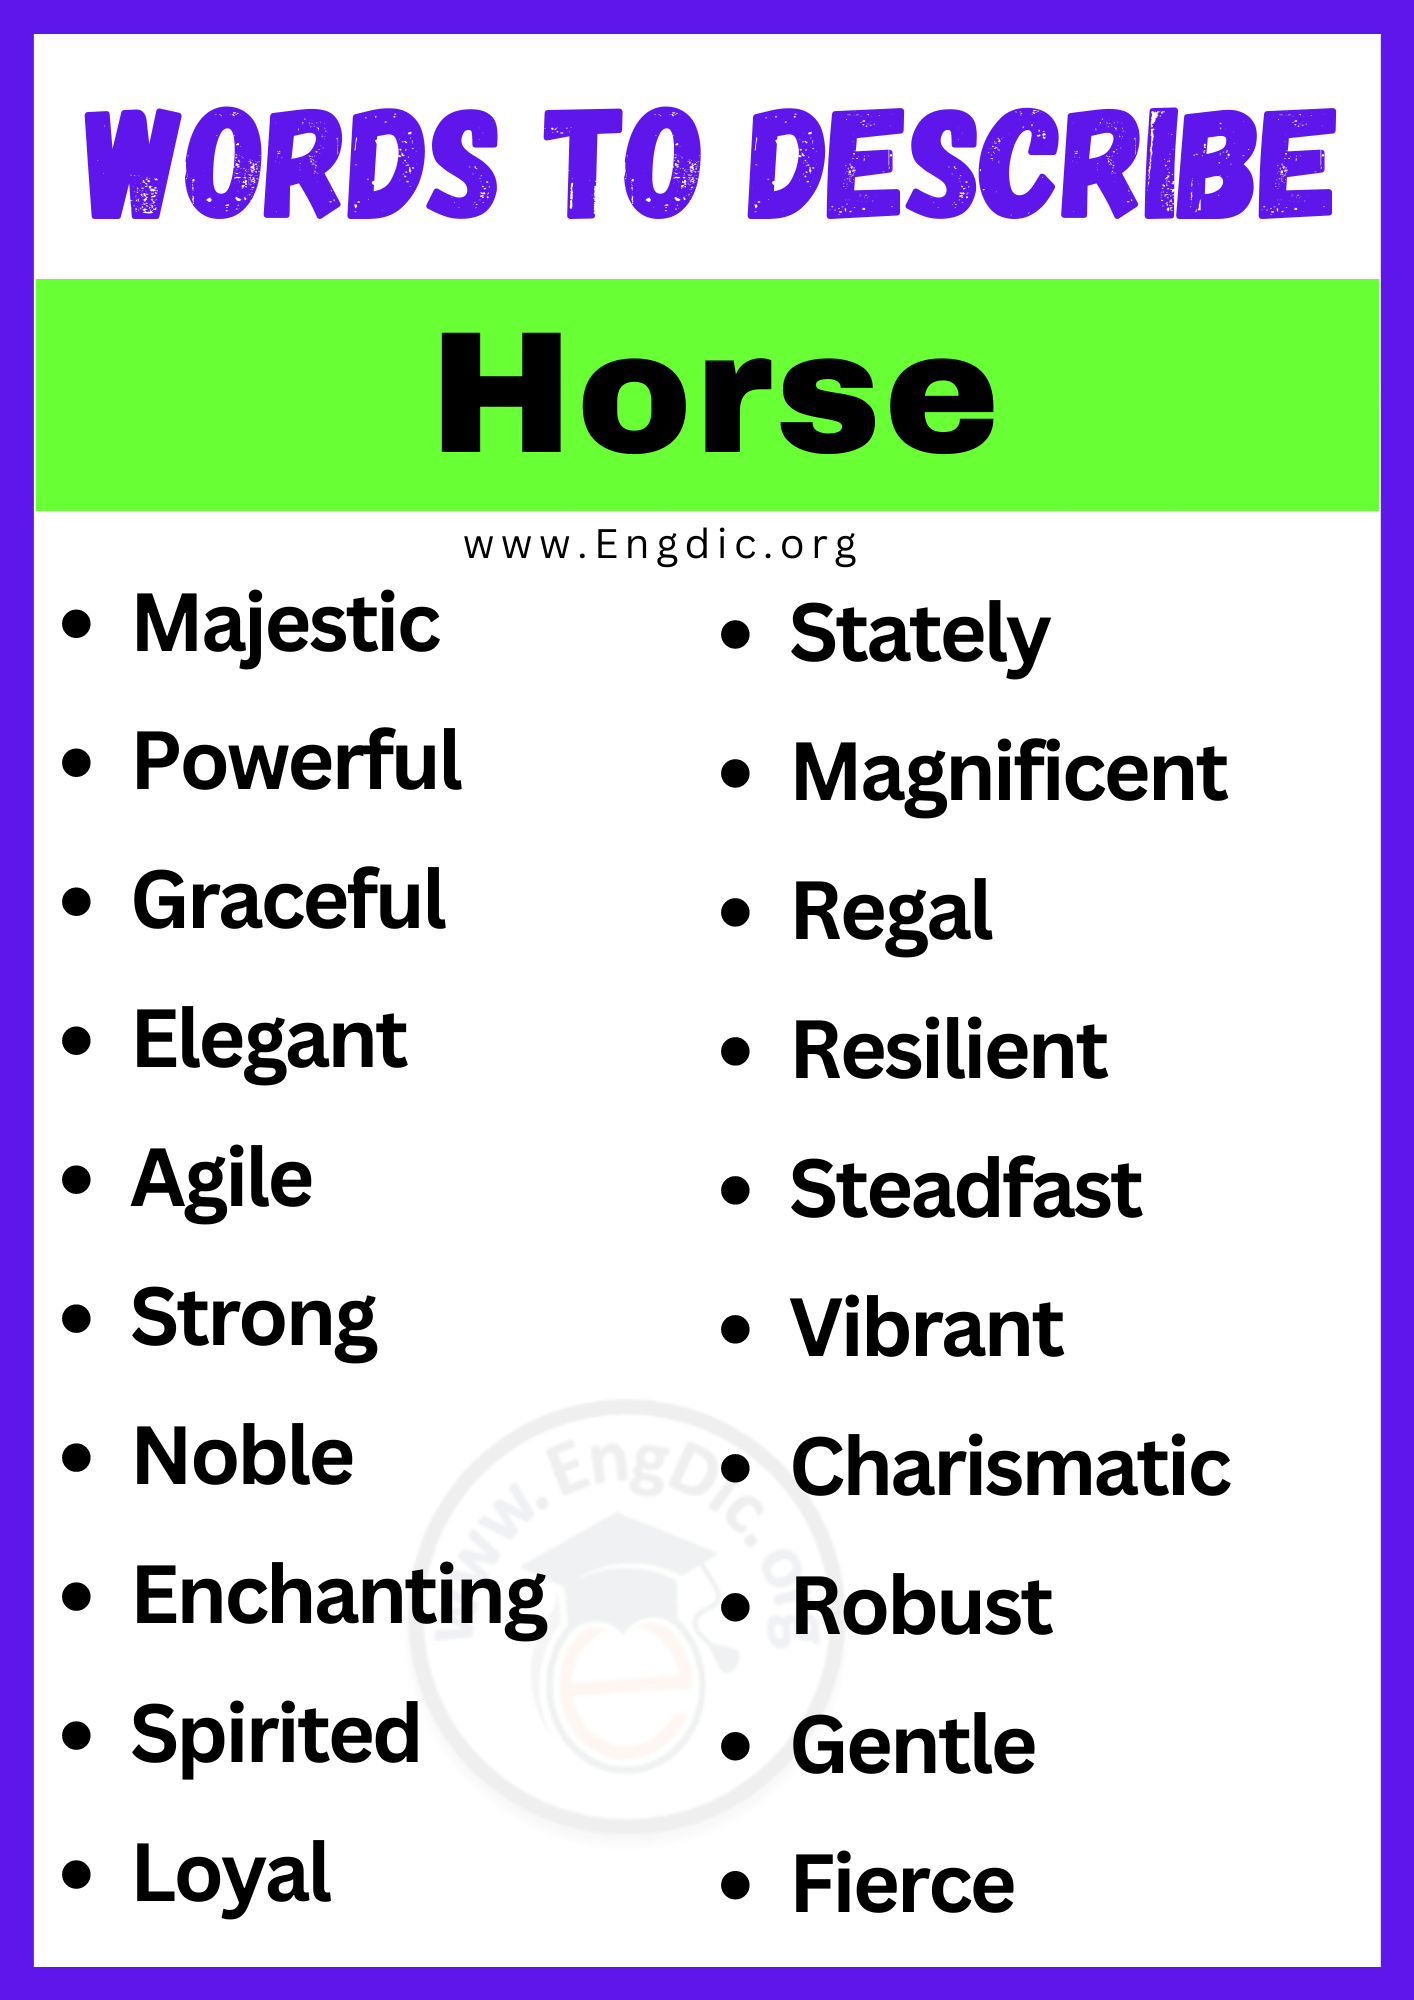 Words to Describe Horse